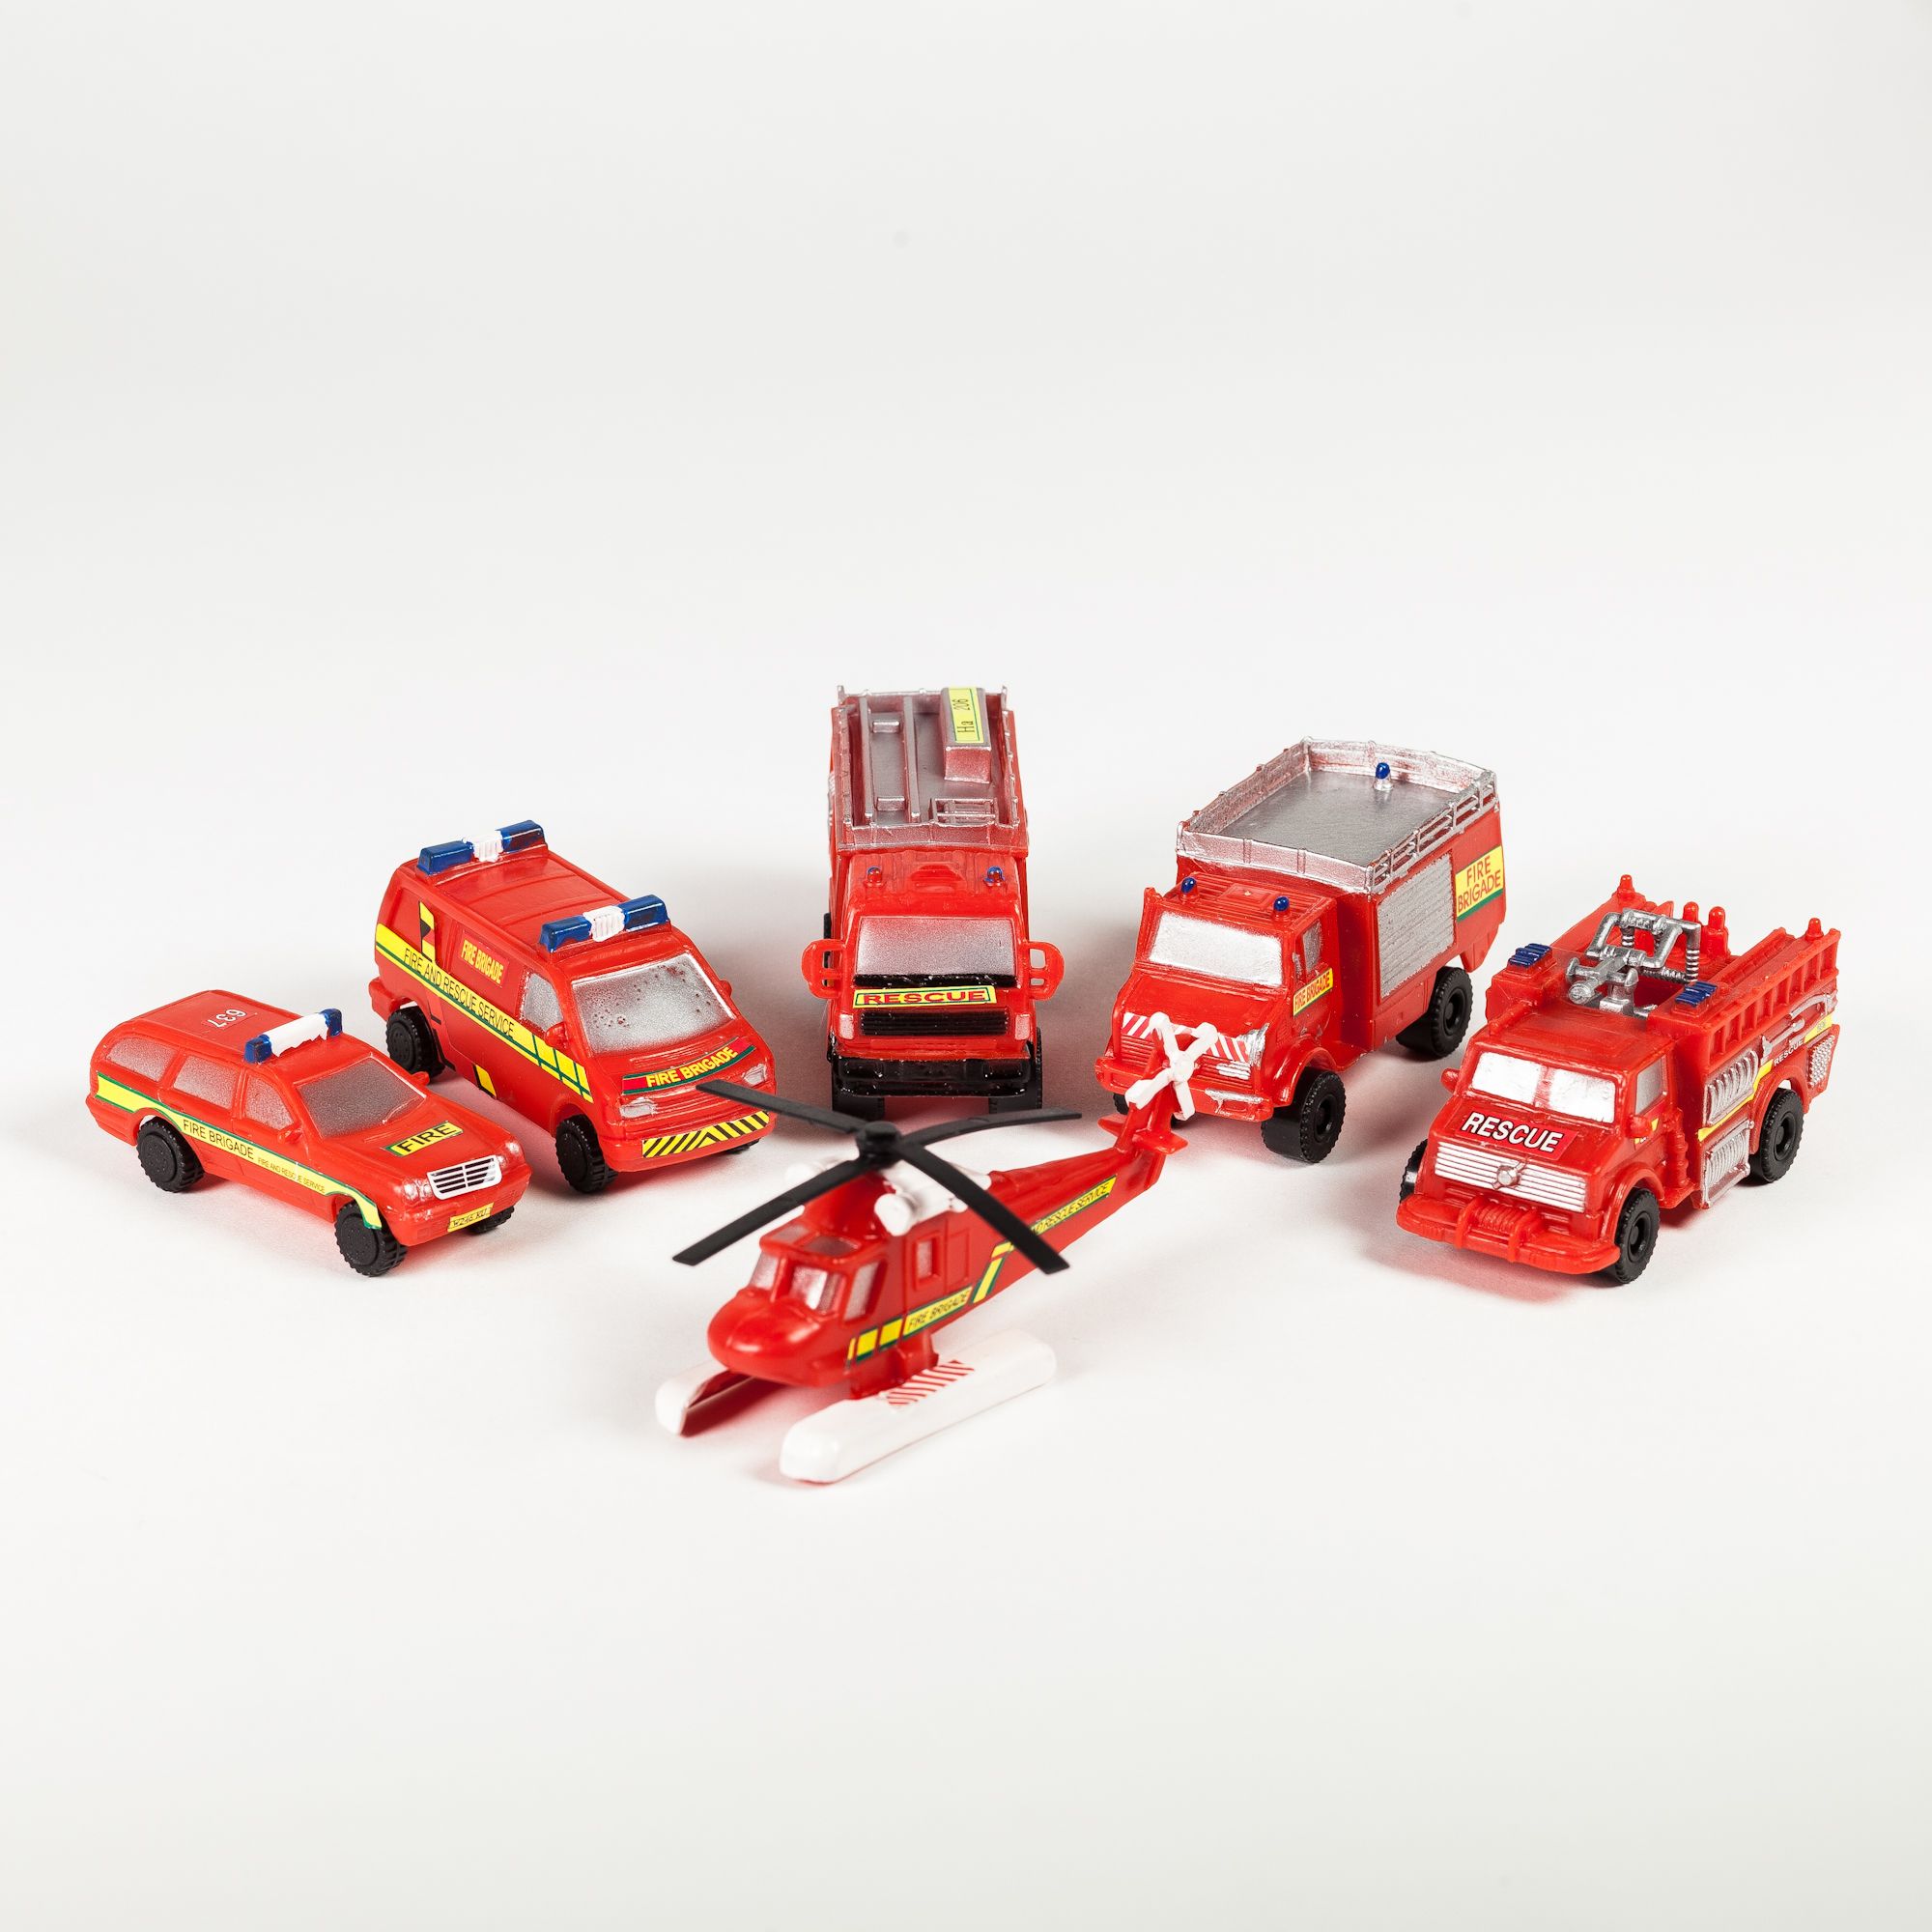 24x Bausteine Set Feuerwehr Mitgebsel Kindergeburtstag Spielzeug Auto Fahrzeuge 